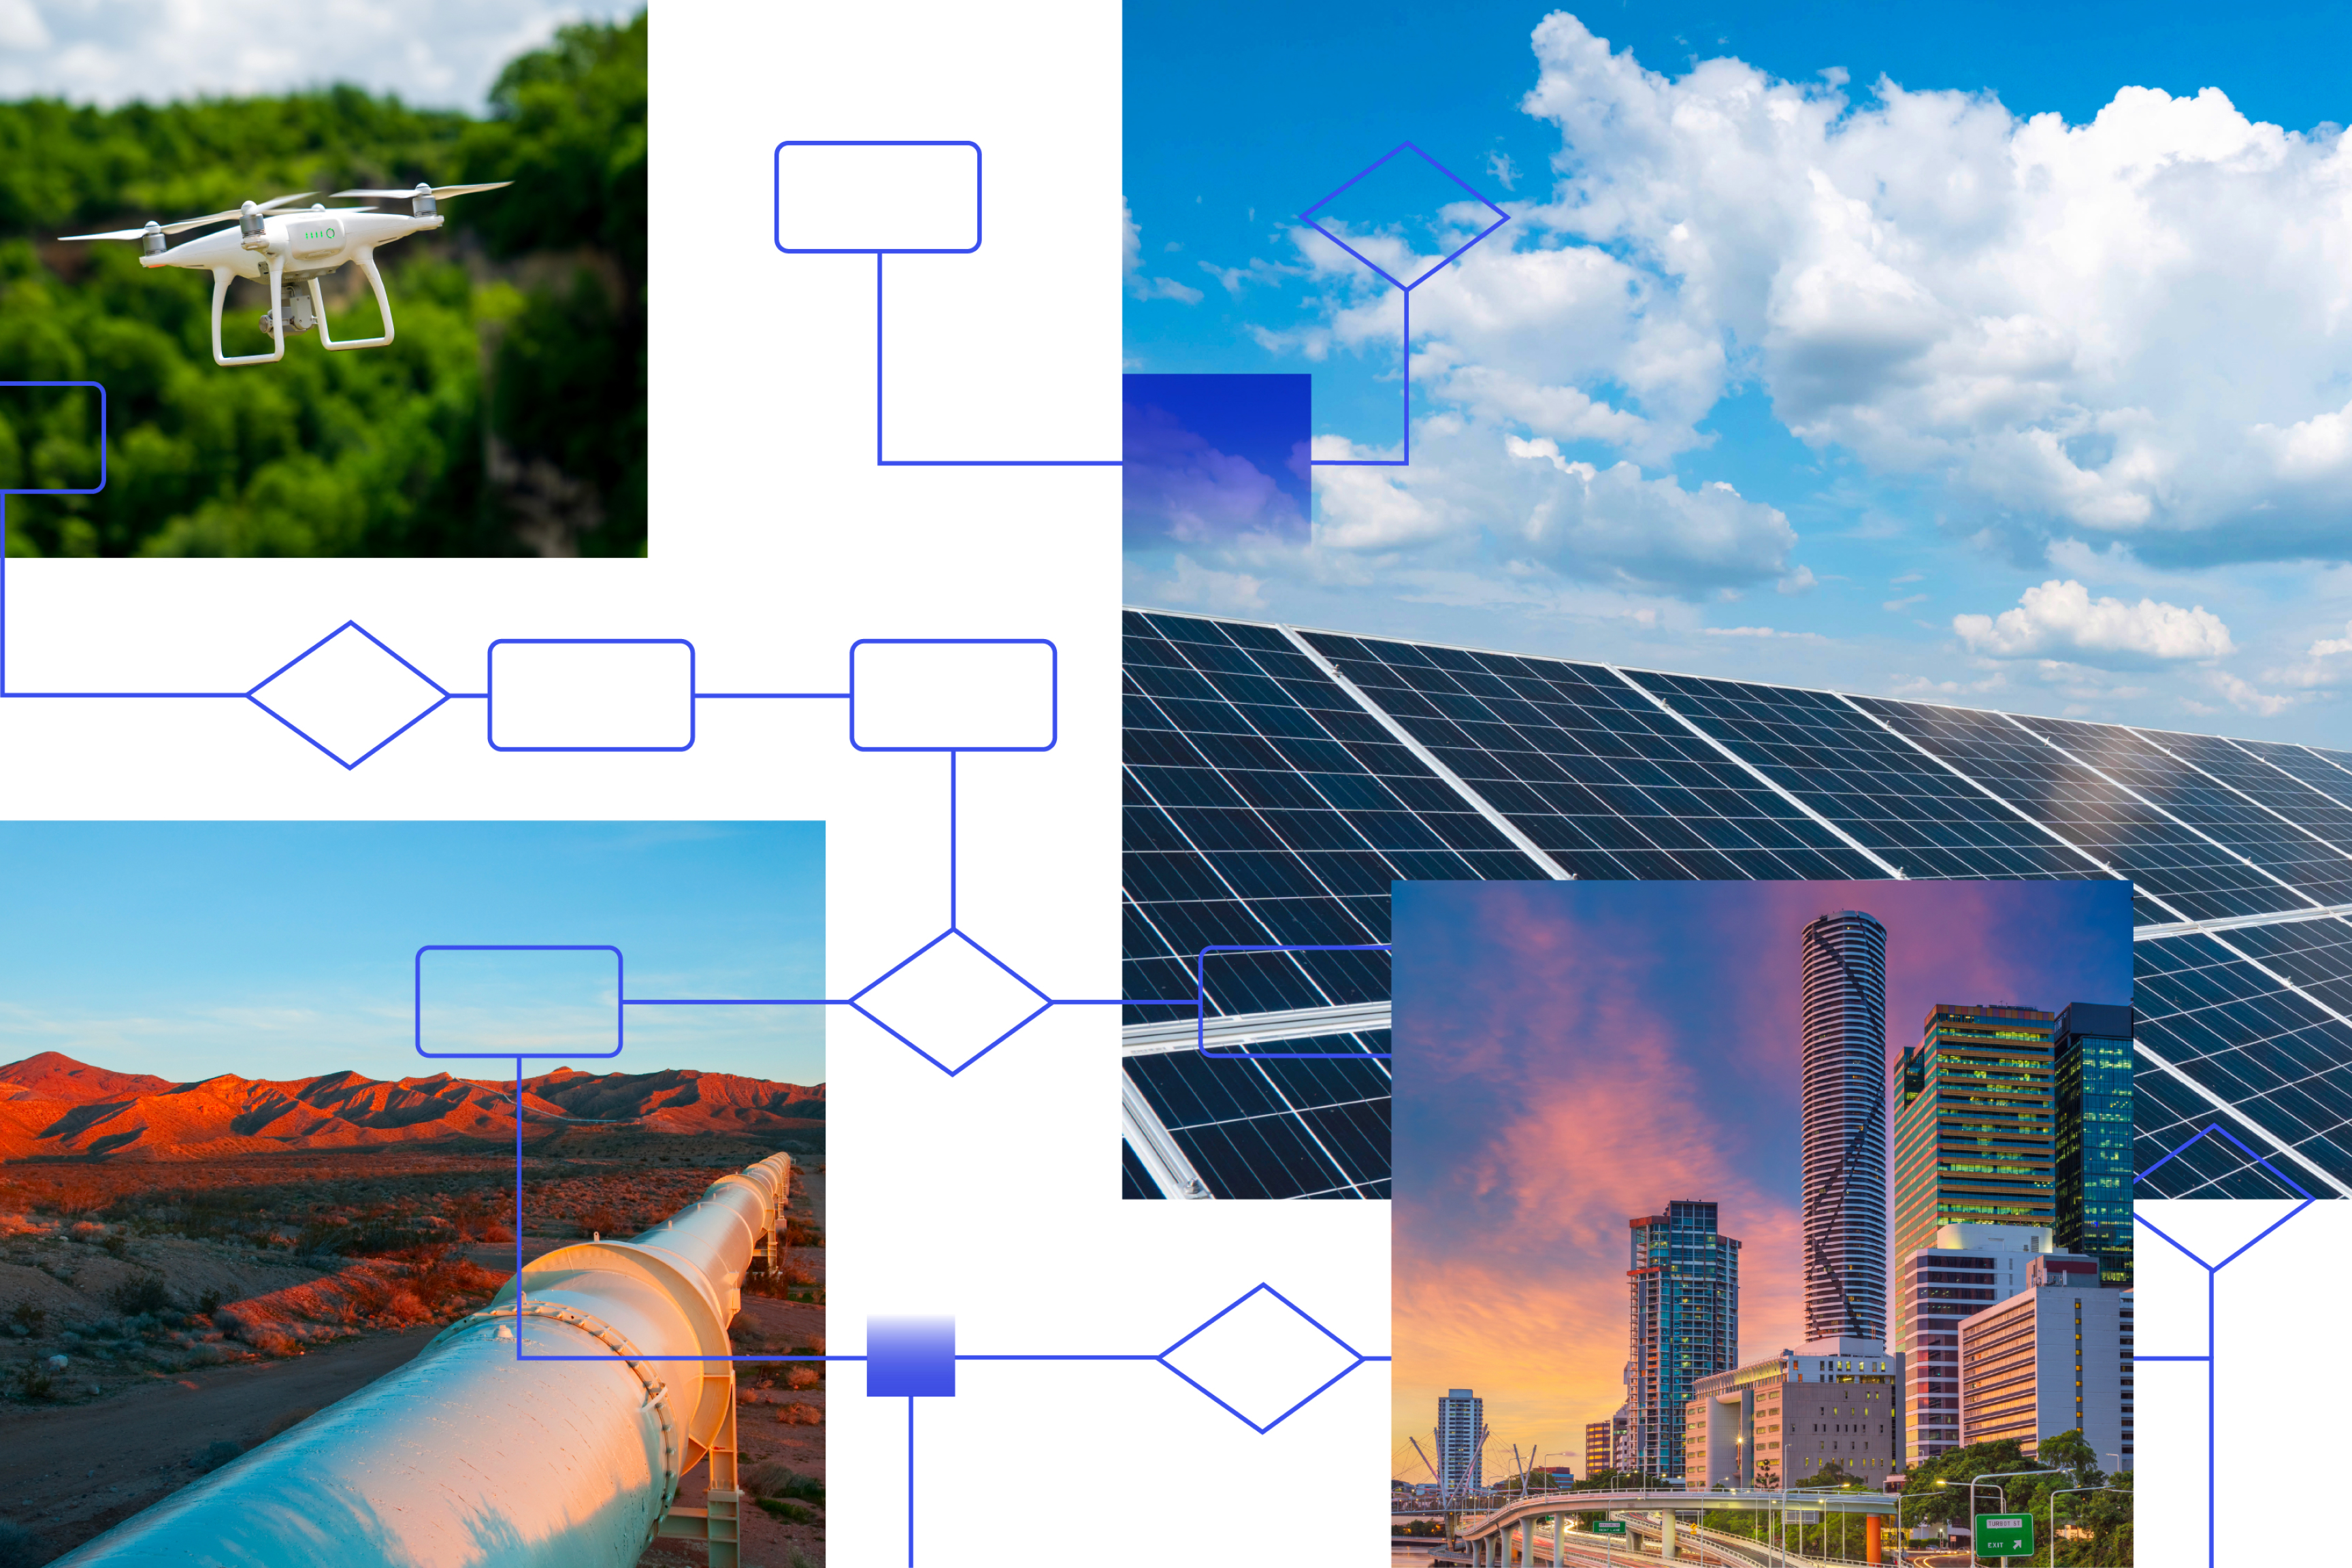 Grupo de imágenes que muestran un dron volando, paneles solares, un oleoducto y el centro de una ciudad con edificios altos 